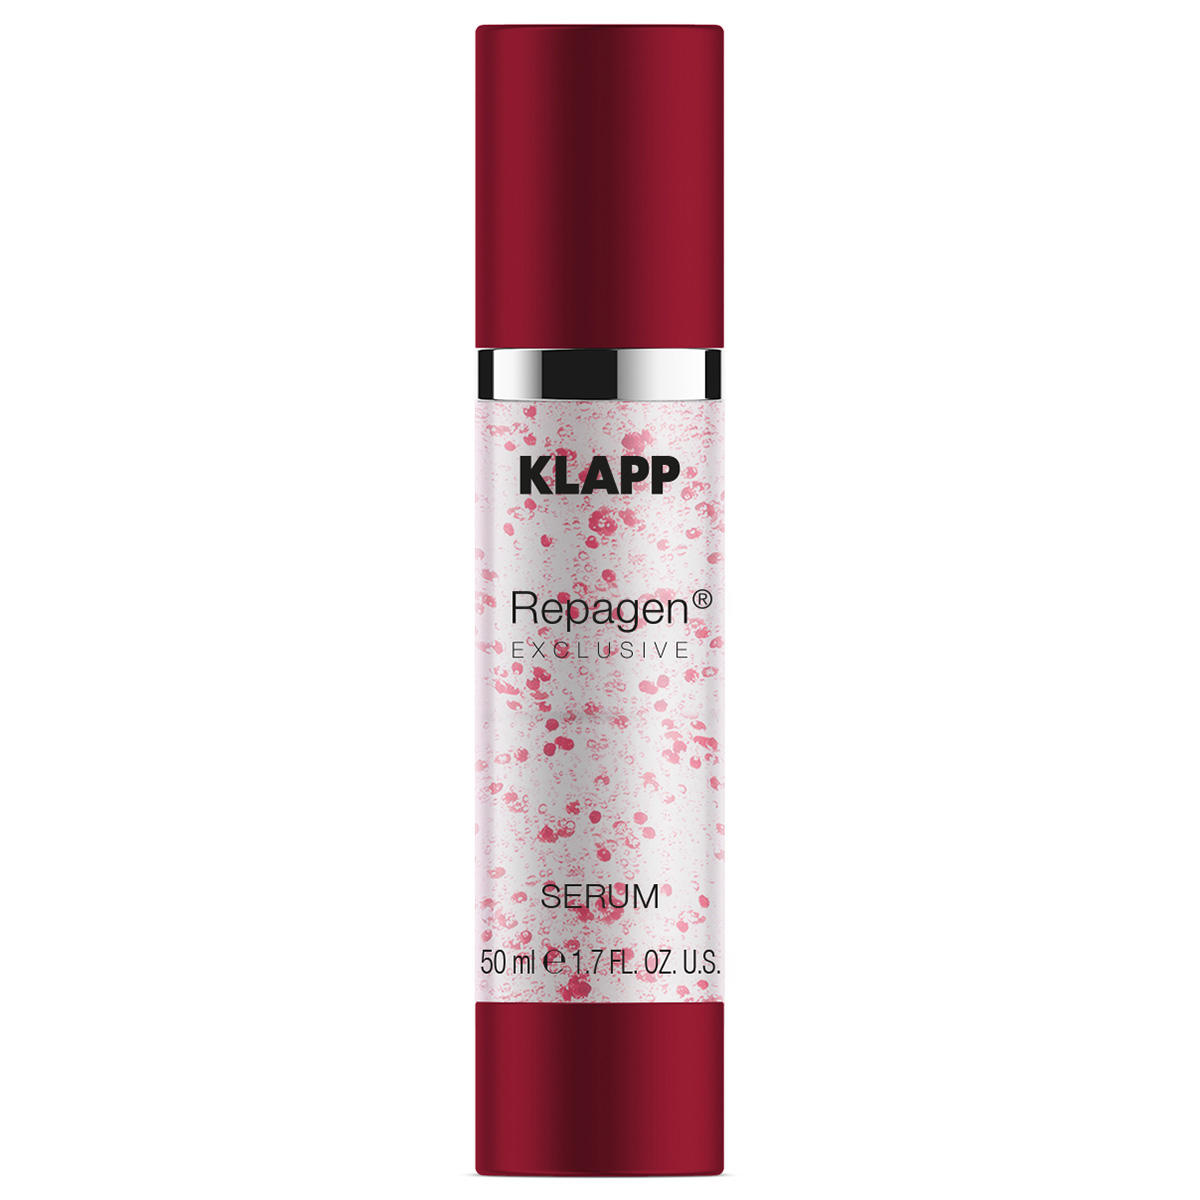 KLAPP REPAGEN EXCLUSIVE Suero 50 ml - 1